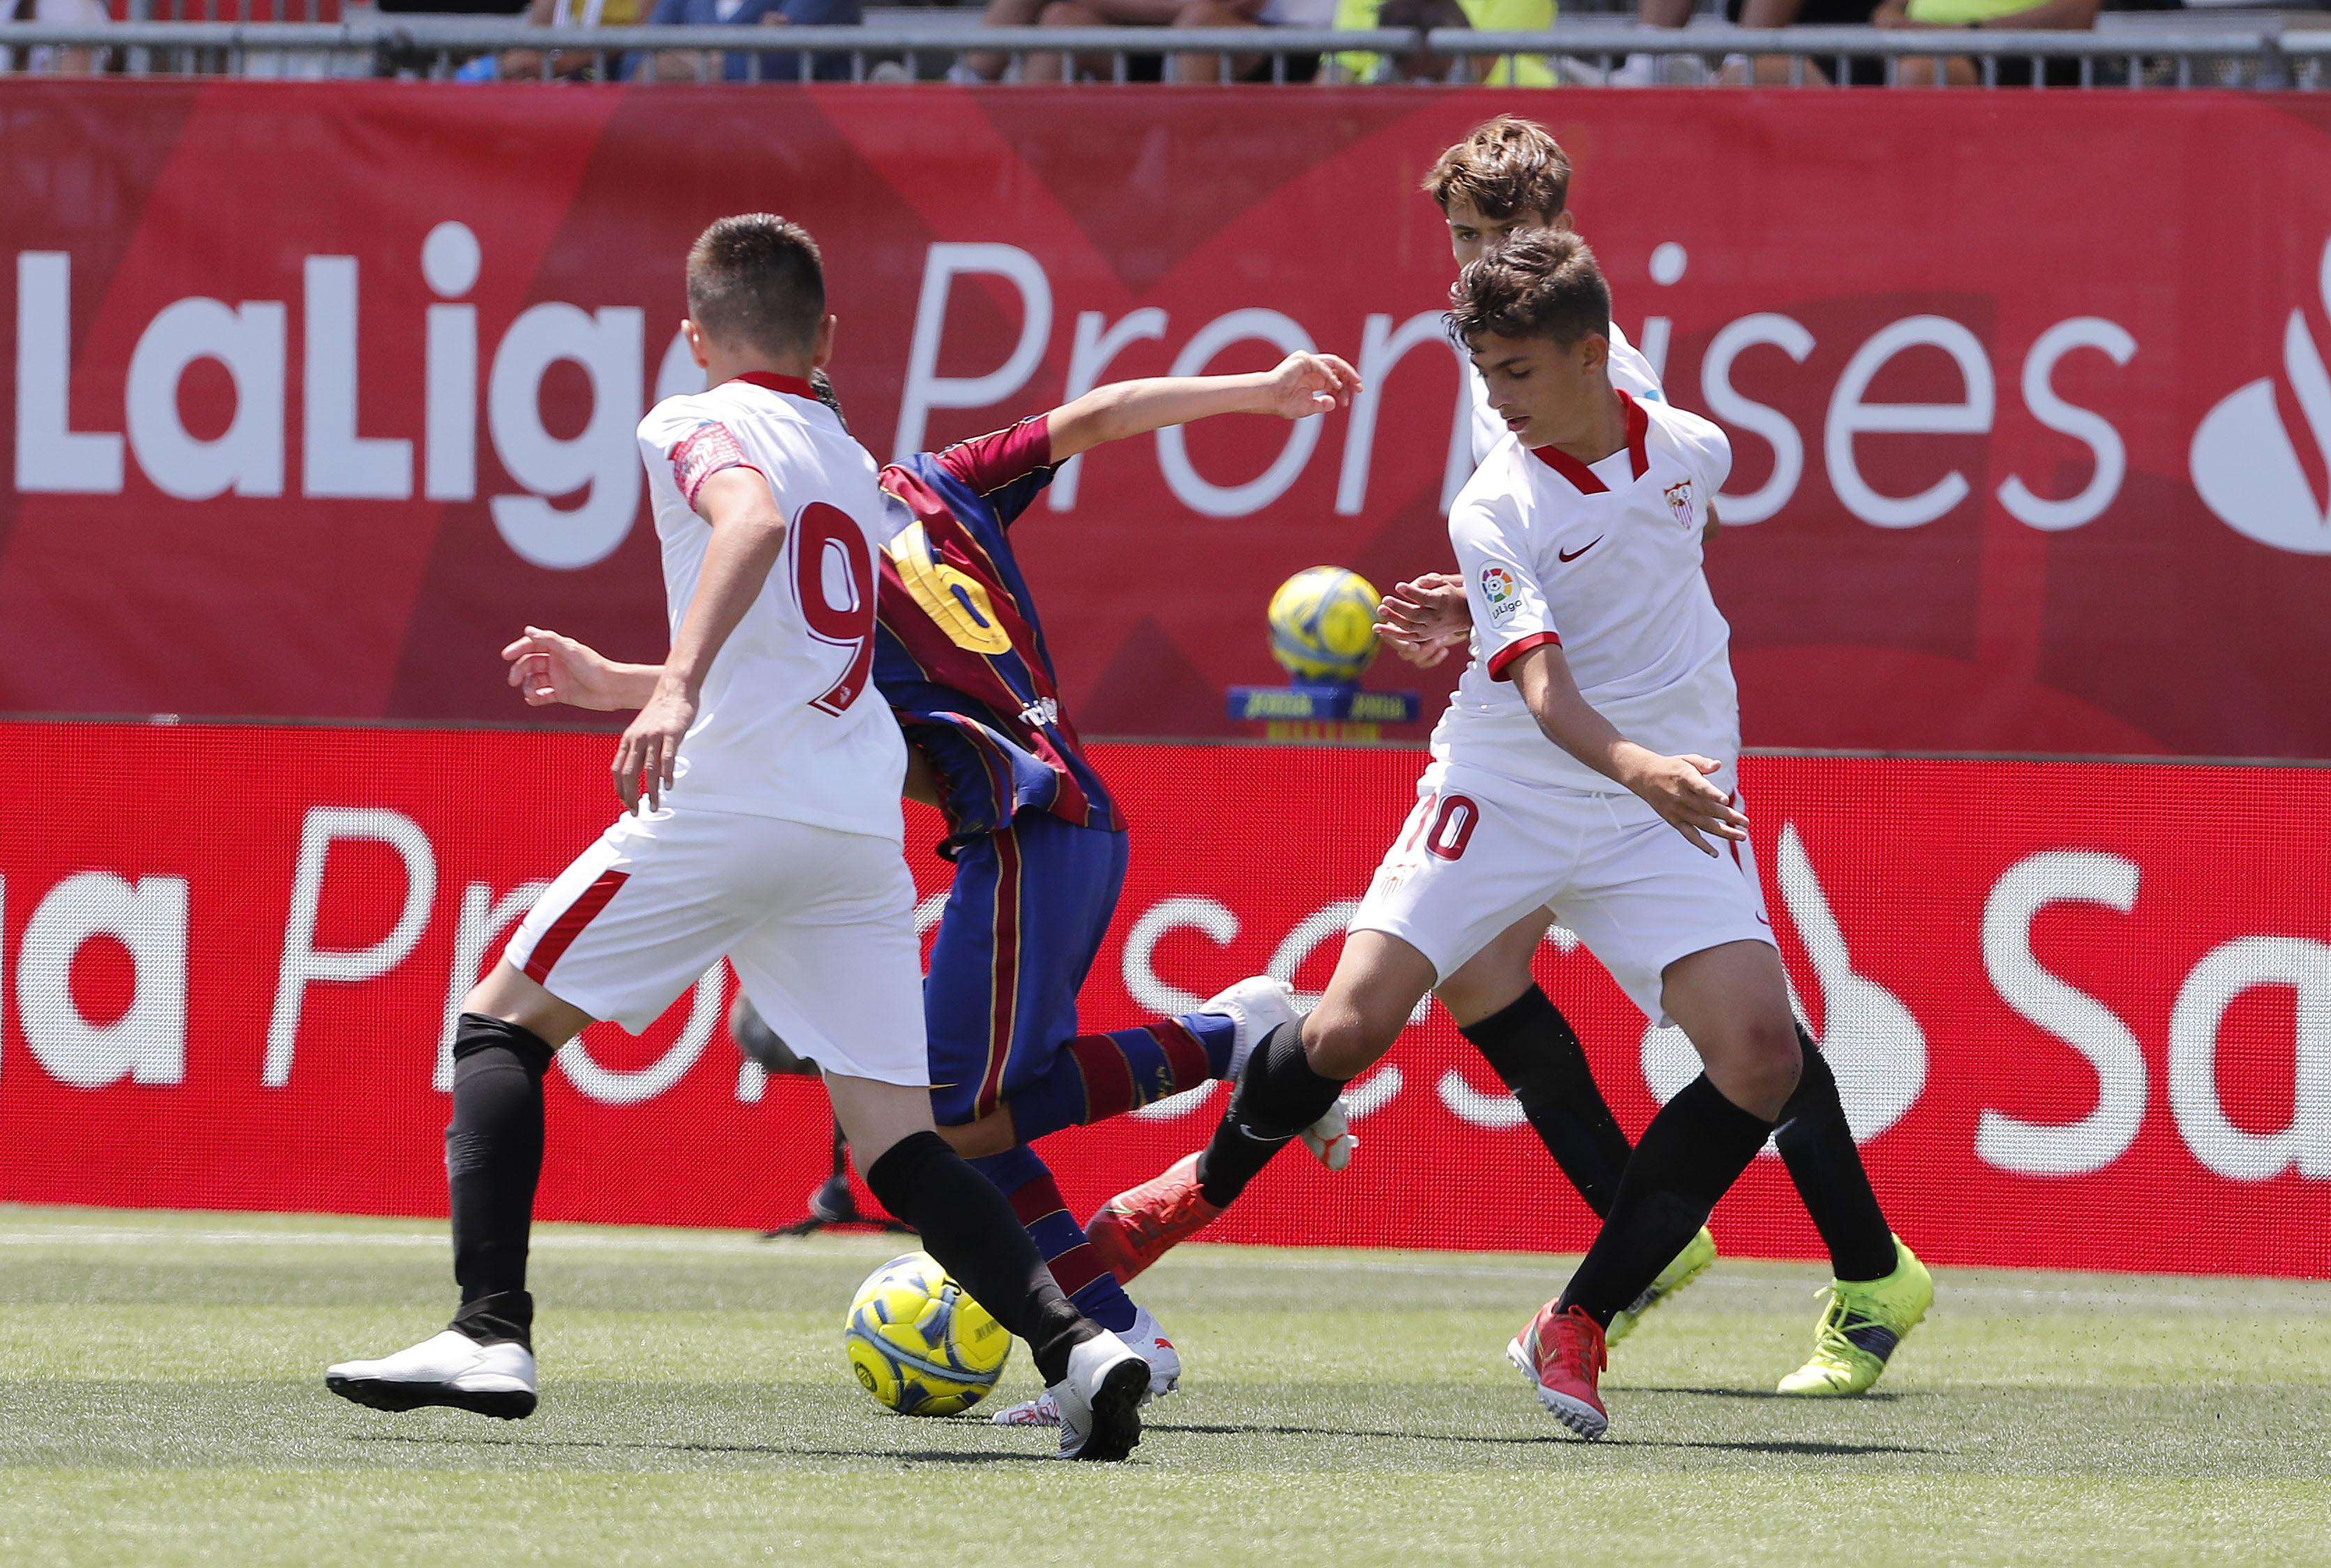 Momento de la final entre Sevilla FC y FB Barcelona de LaLiga Promises